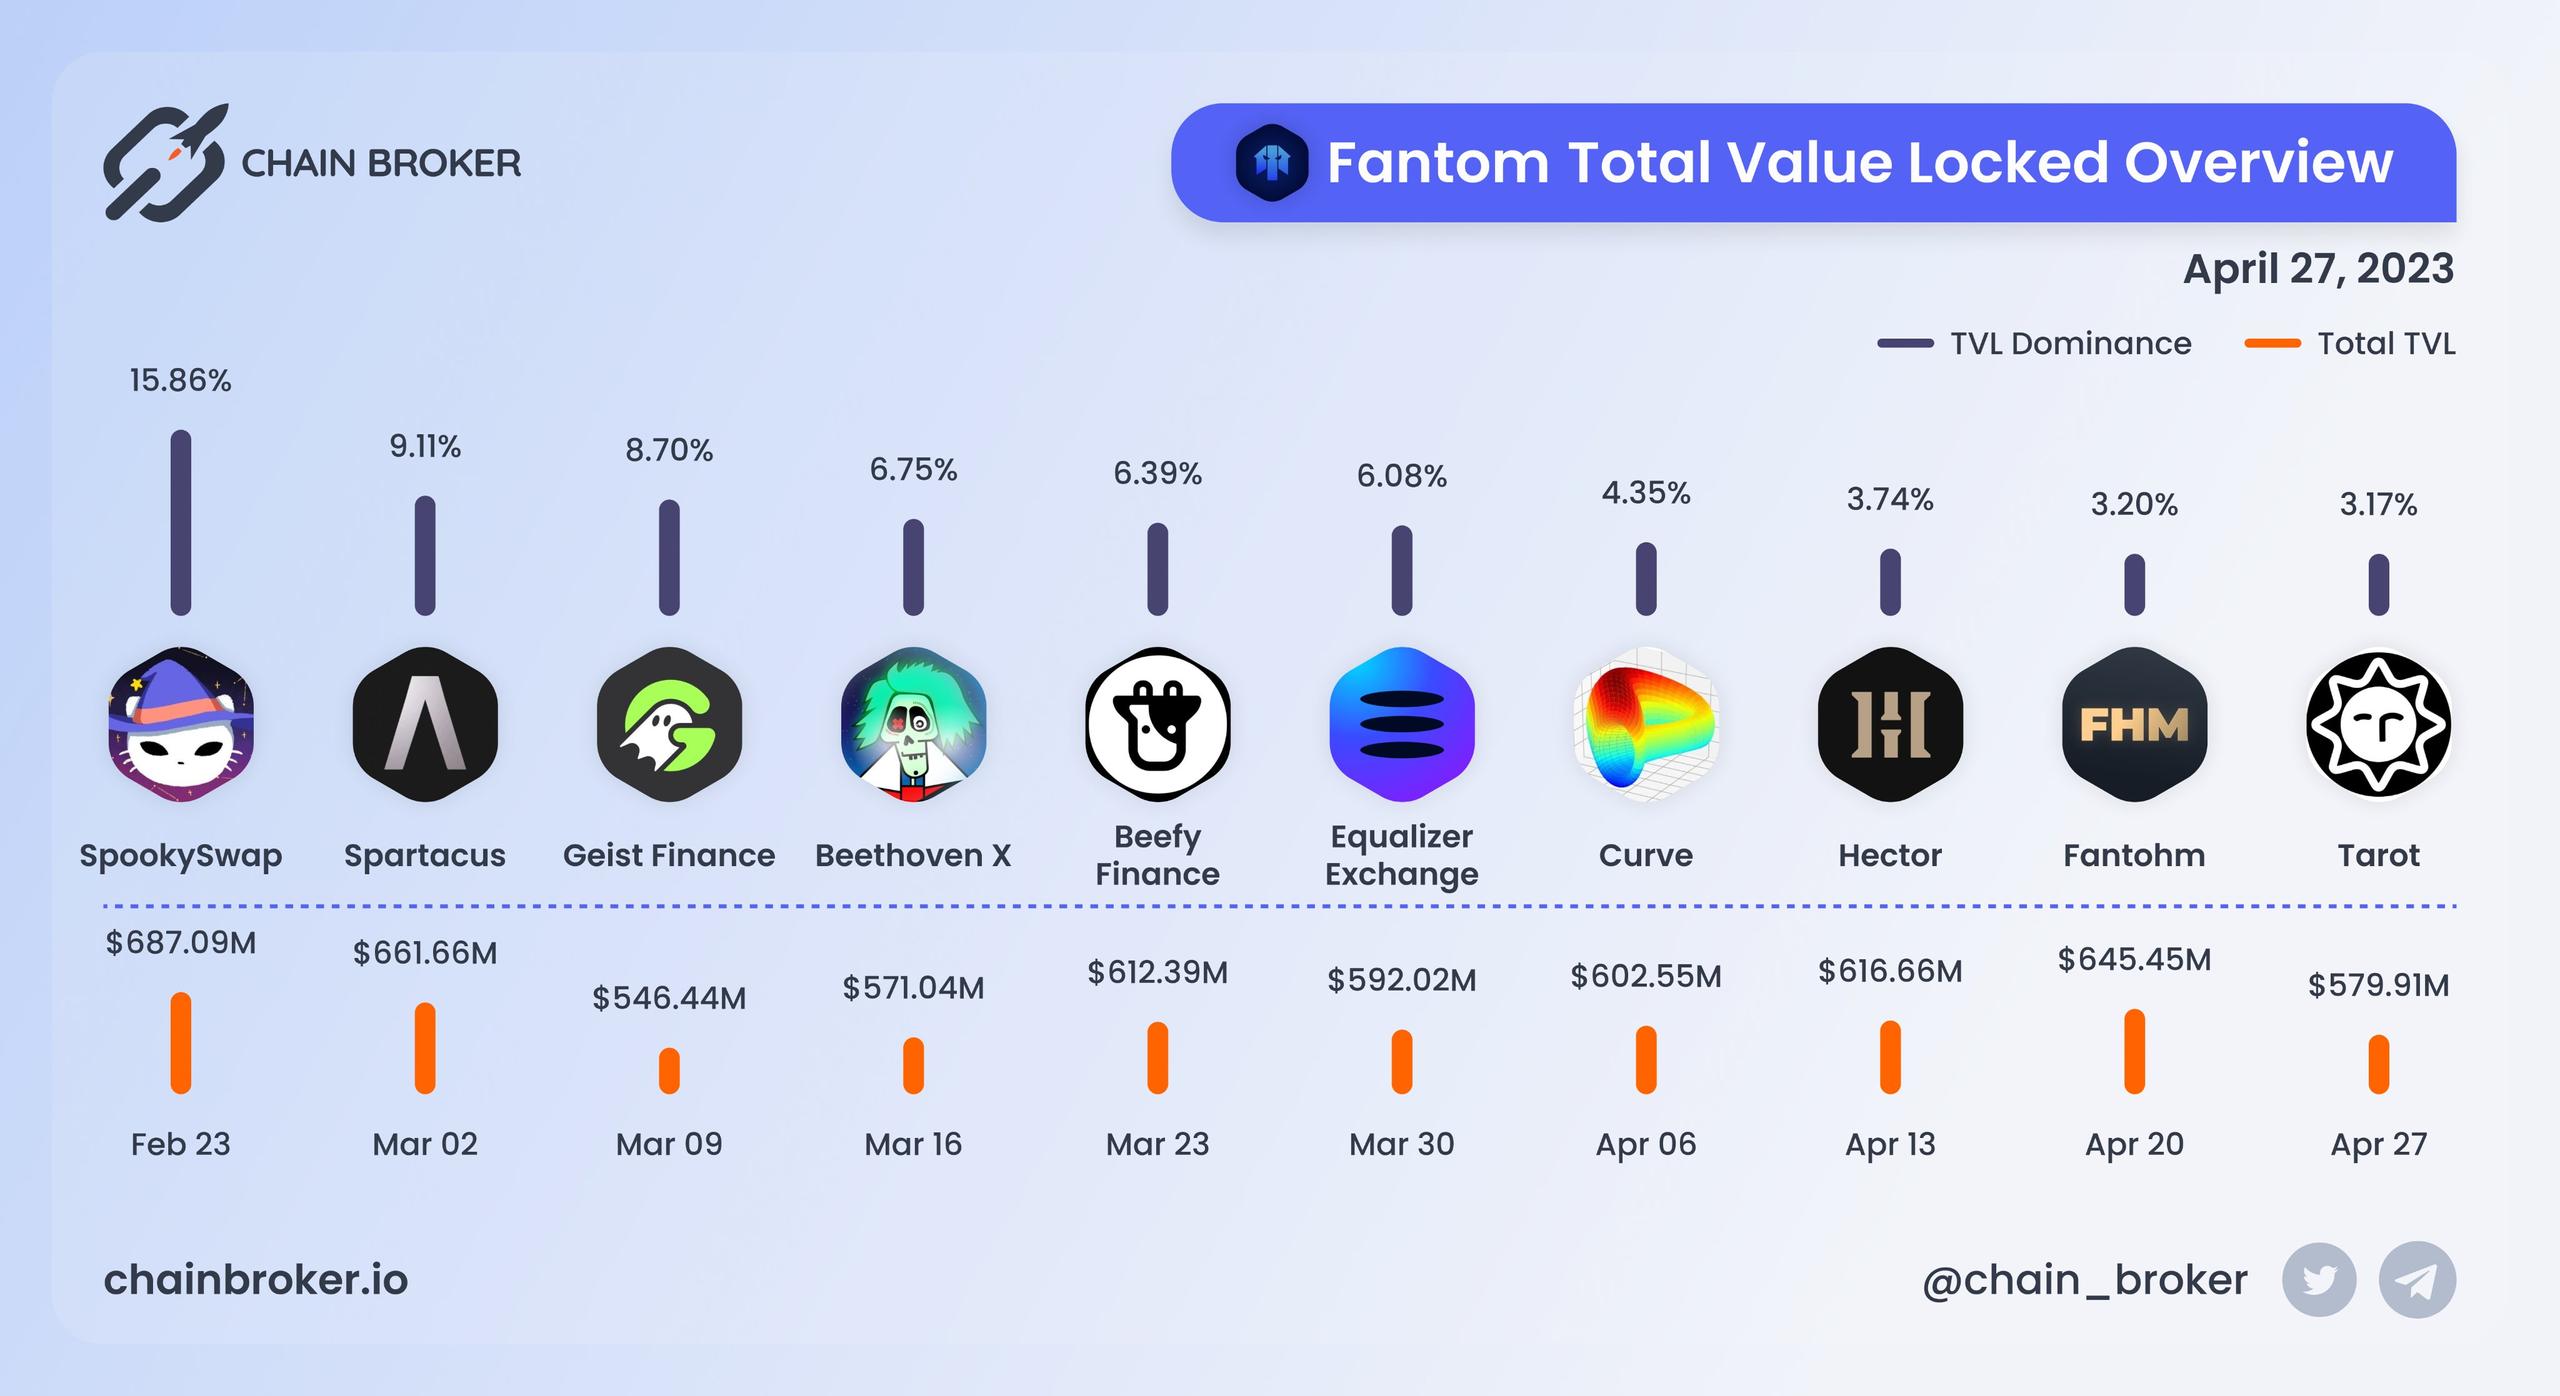 Fantom total value locked overview